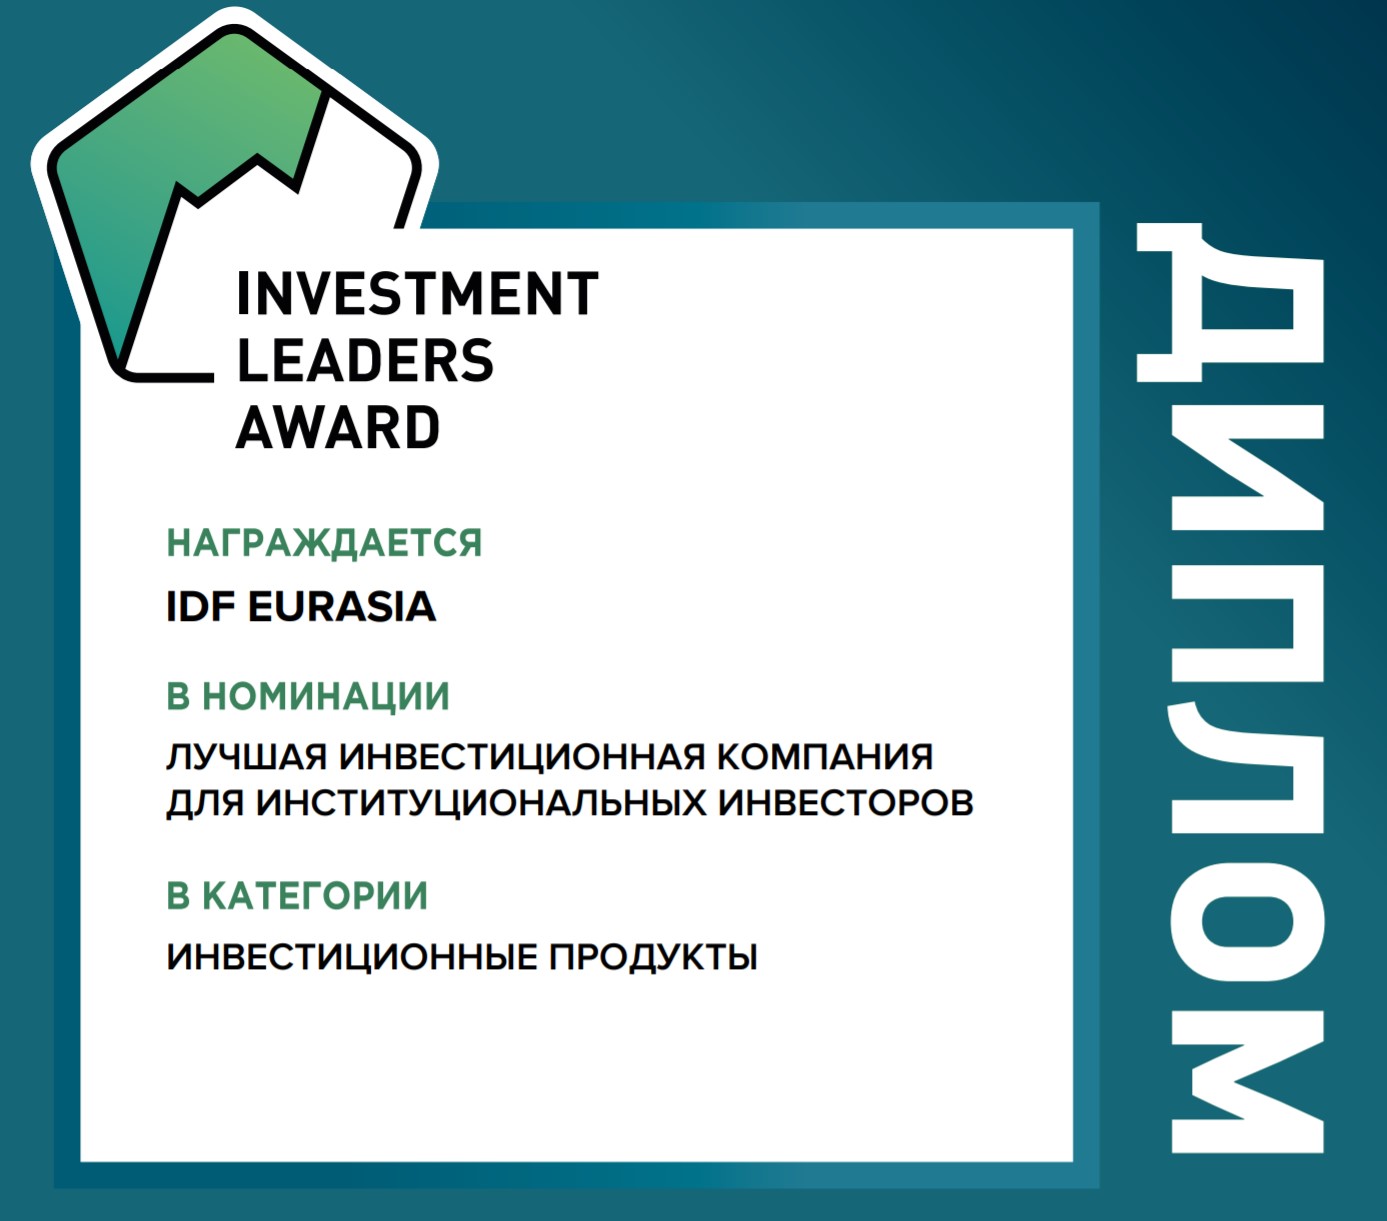 IDF Eurasia — лучшая инвестиционная компания по версии Investment Leaders